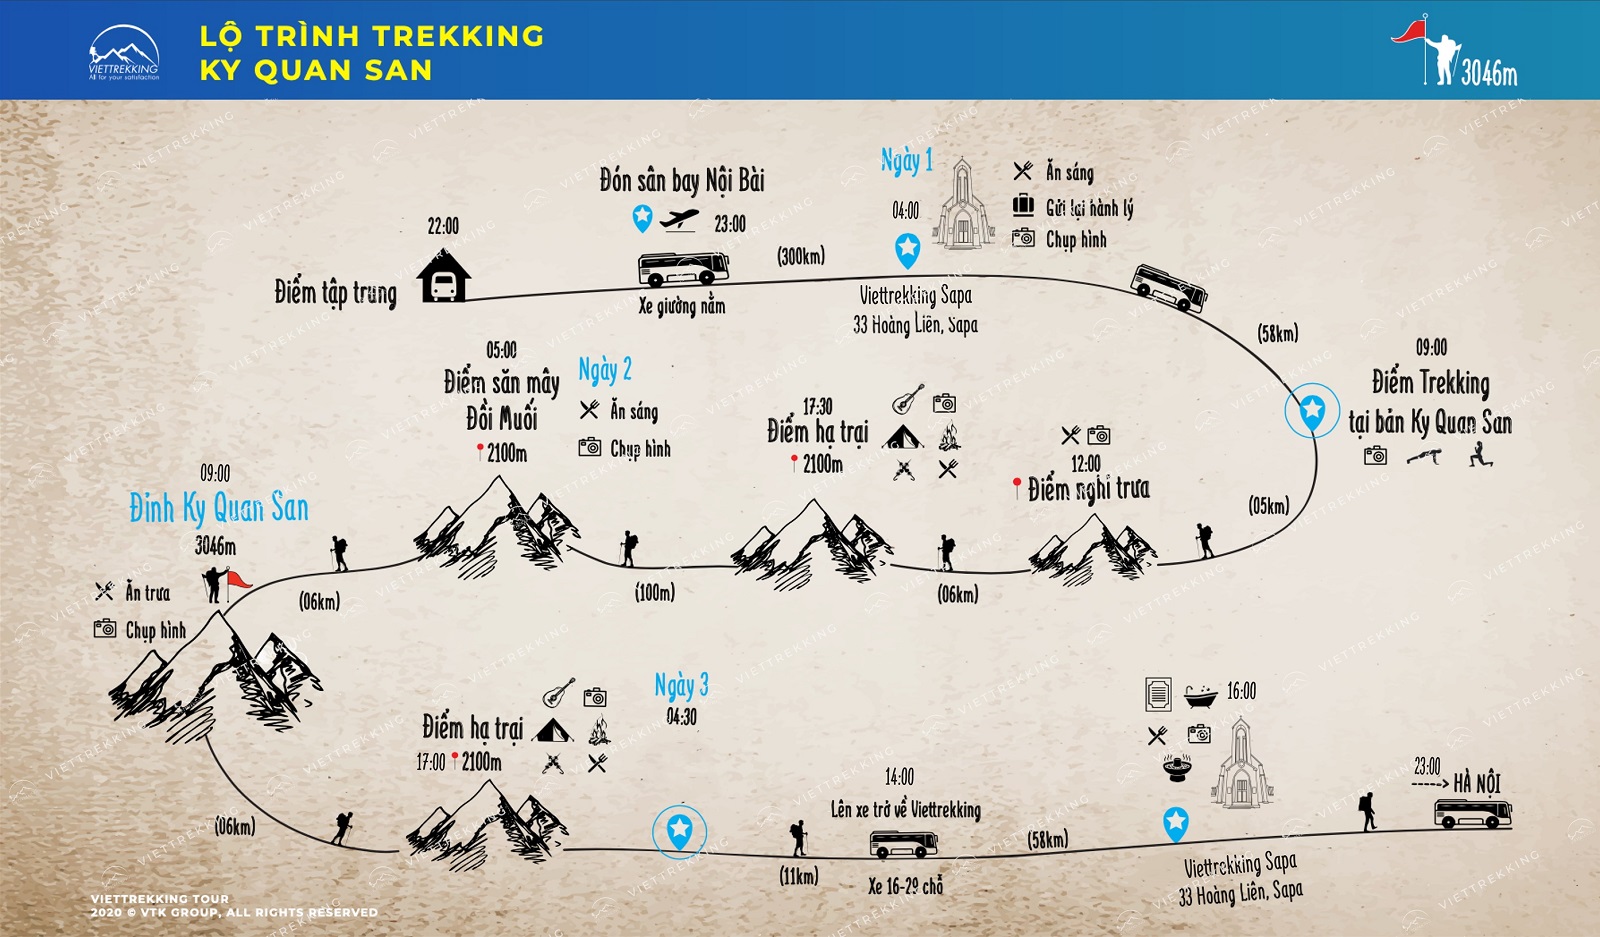 Lộ trình trekking Bạch Mộc Lương Tử - Ky Quan San - Viettrekking